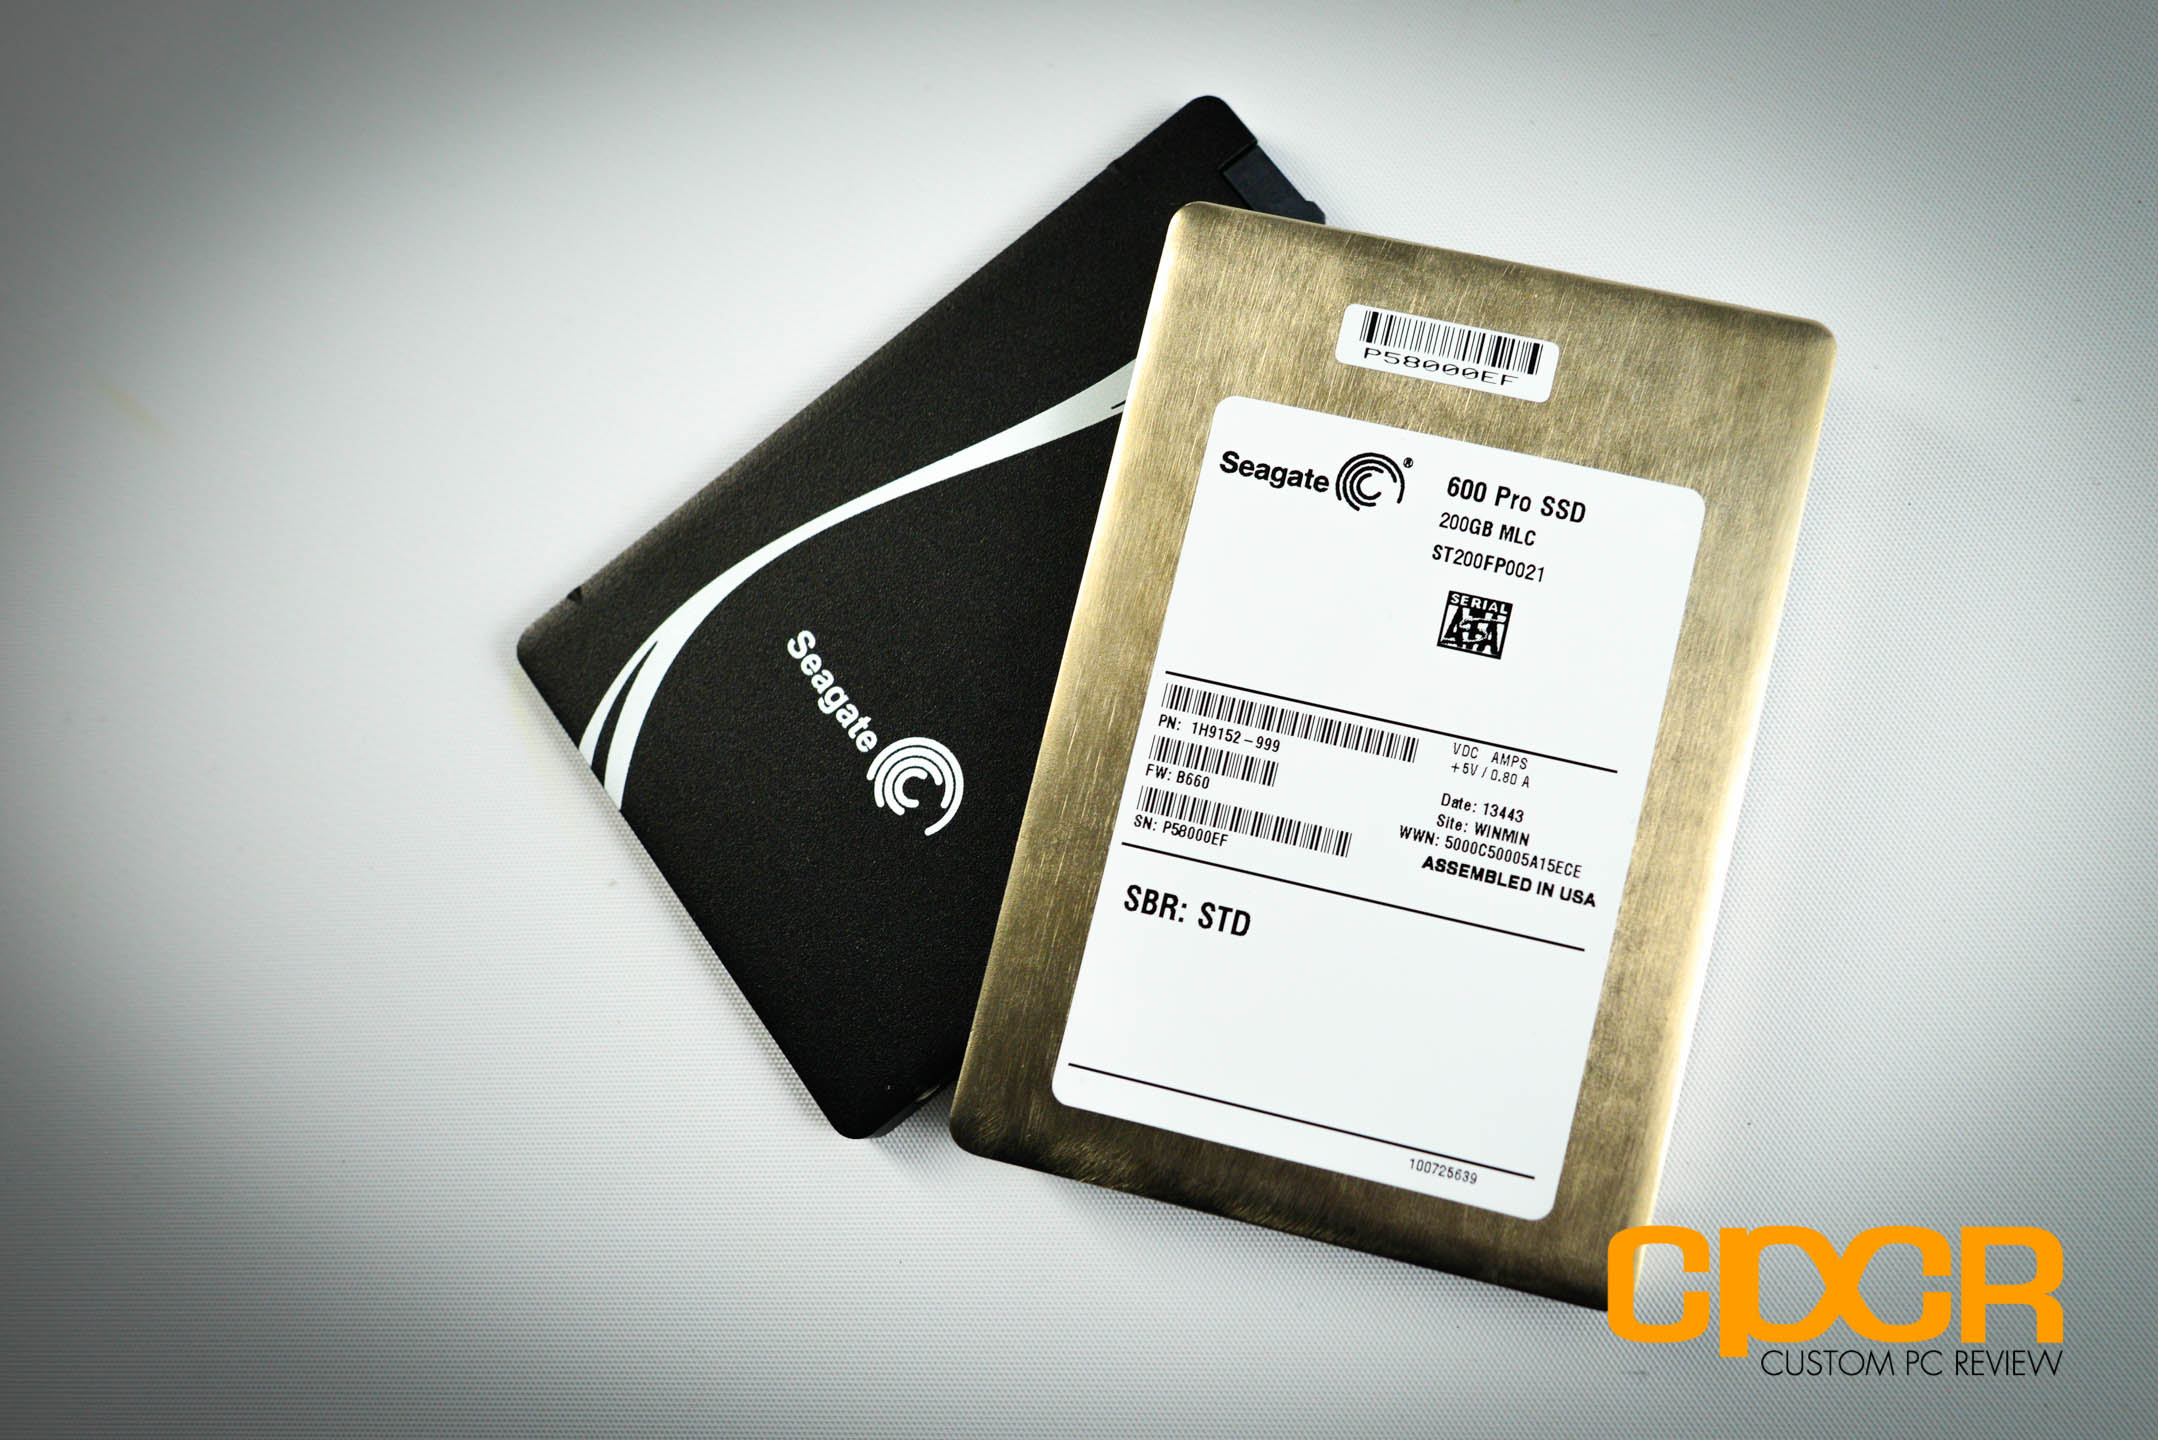 Review: Seagate 600 Pro 200GB Enterprise SSD